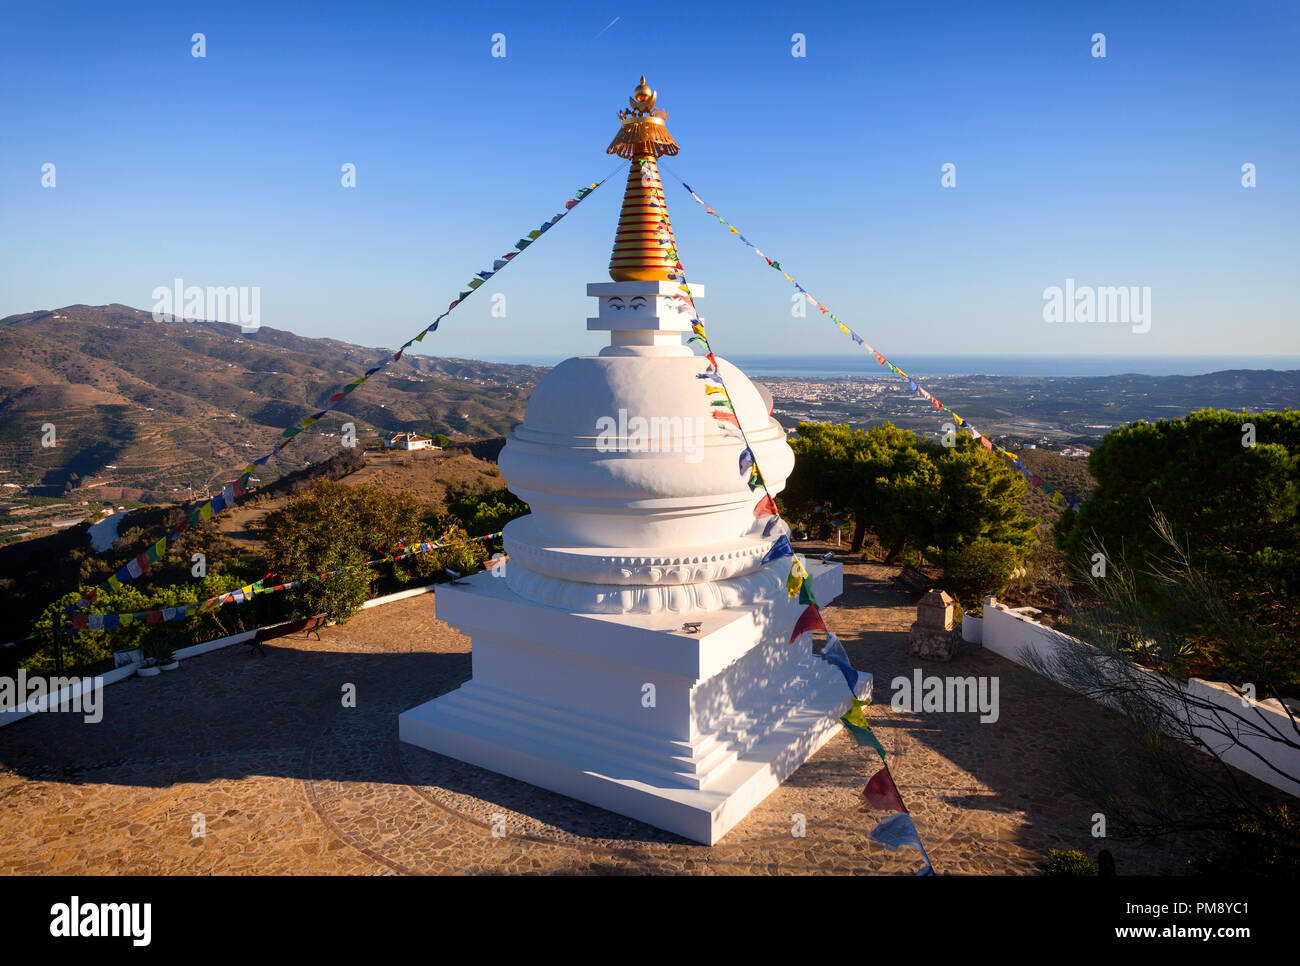 Der Kalachakra Stupa über Trepiche. Nach der buddhistischen Tradition Es bringt Frieden, Wohlstand und Schutz und wurde von lupon Tsechu Rimpoche gebaut Stockfoto